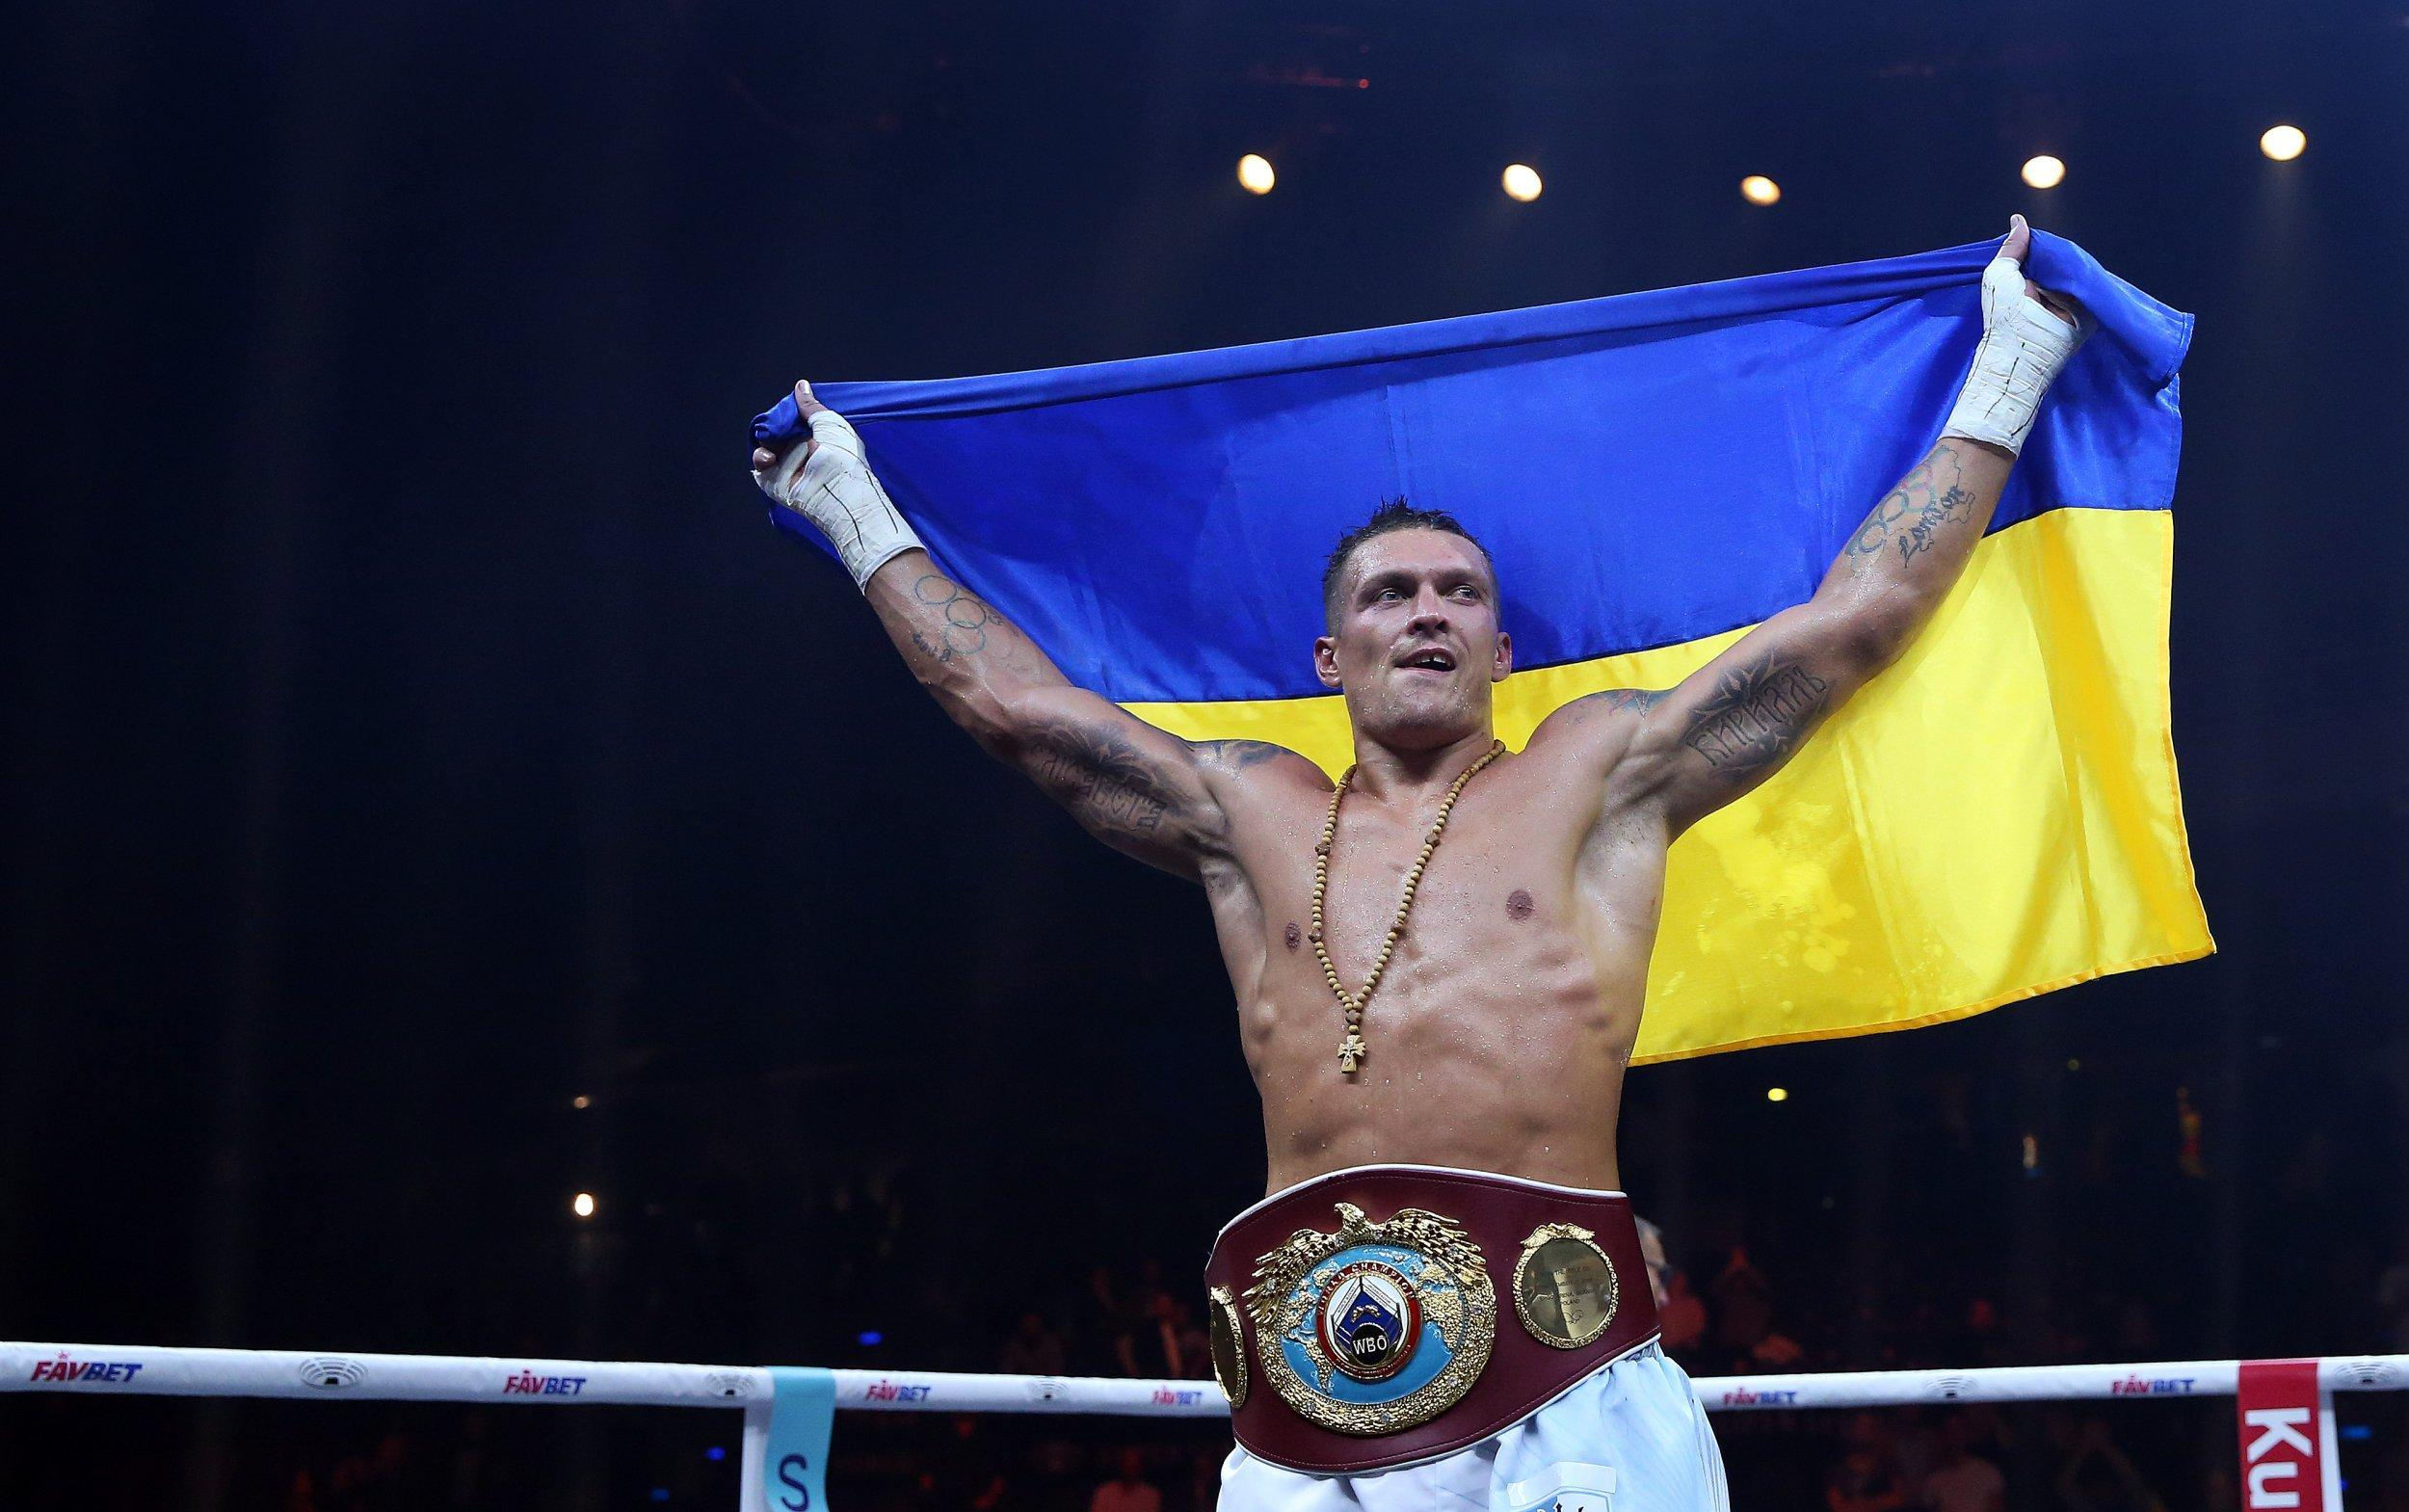 Усик – проукраїнець, – Віталій Кличко висловився про політичні погляди боксера - бокс останні новини - Спорт 24